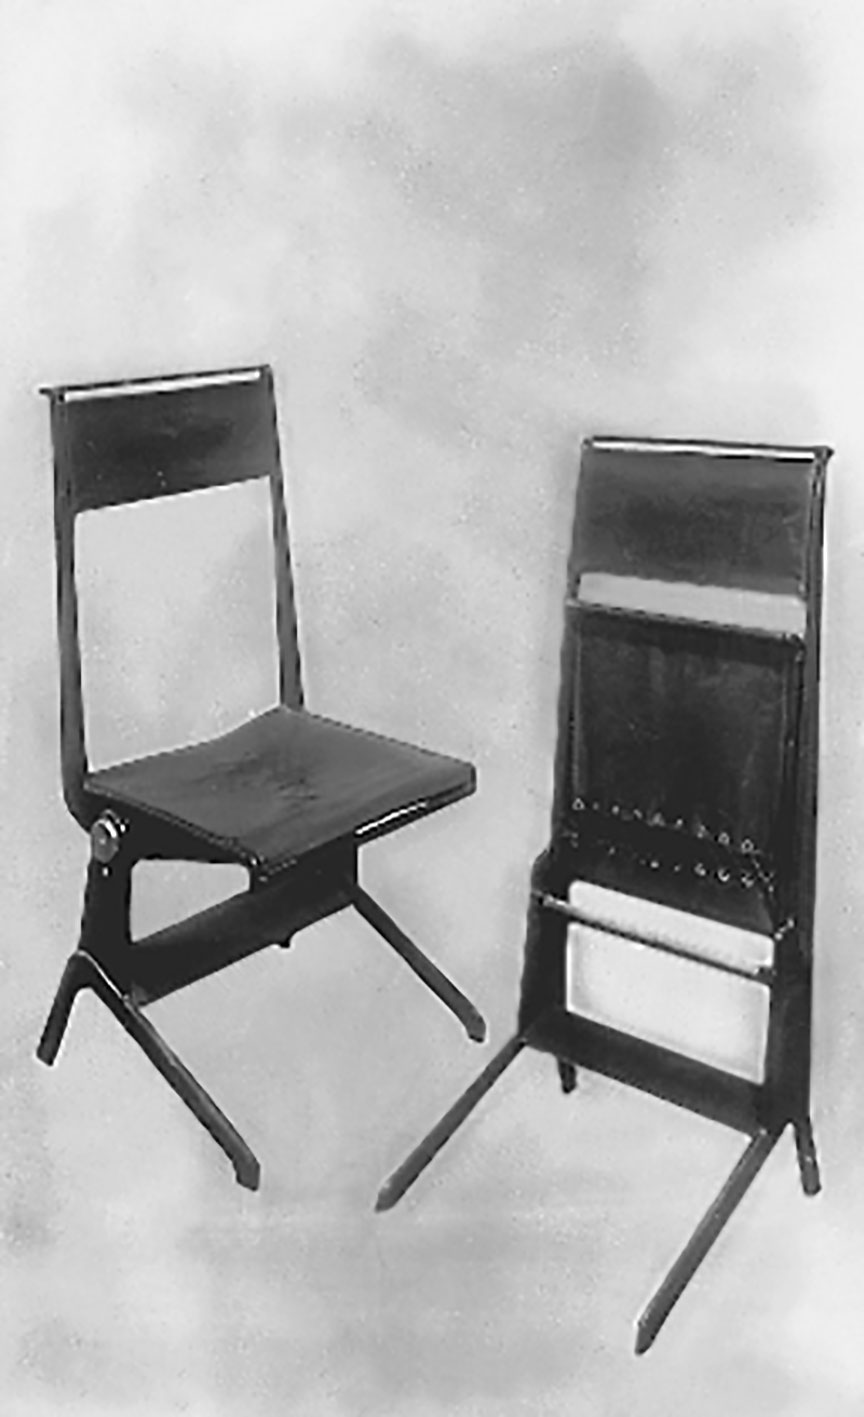 Chaise inclinable et chaise pliante. Planche extraite du catalogue <i>Jean Prouvé ferronnier</i>, c. 1930.